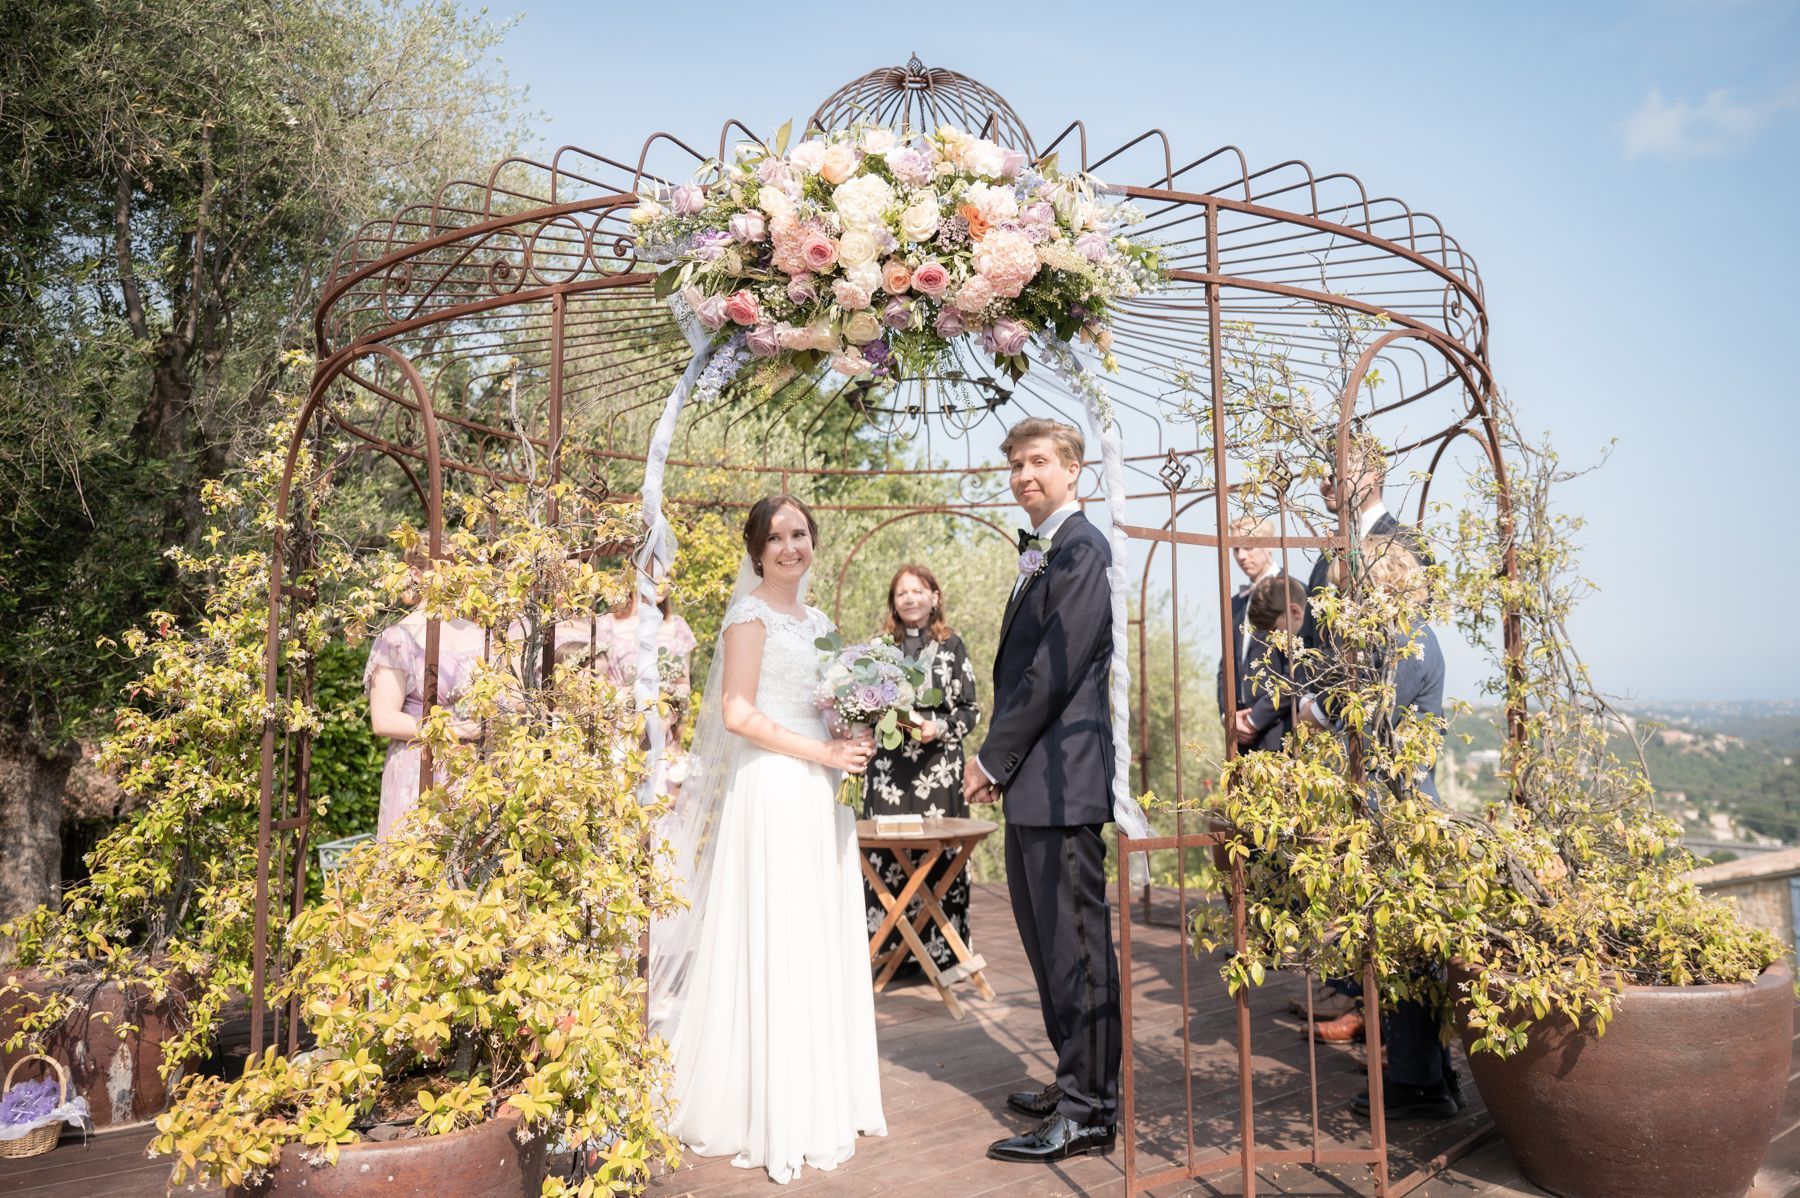 une cérémonie de mariage en plein air sous une véranda décorée de fleurs dans un verger